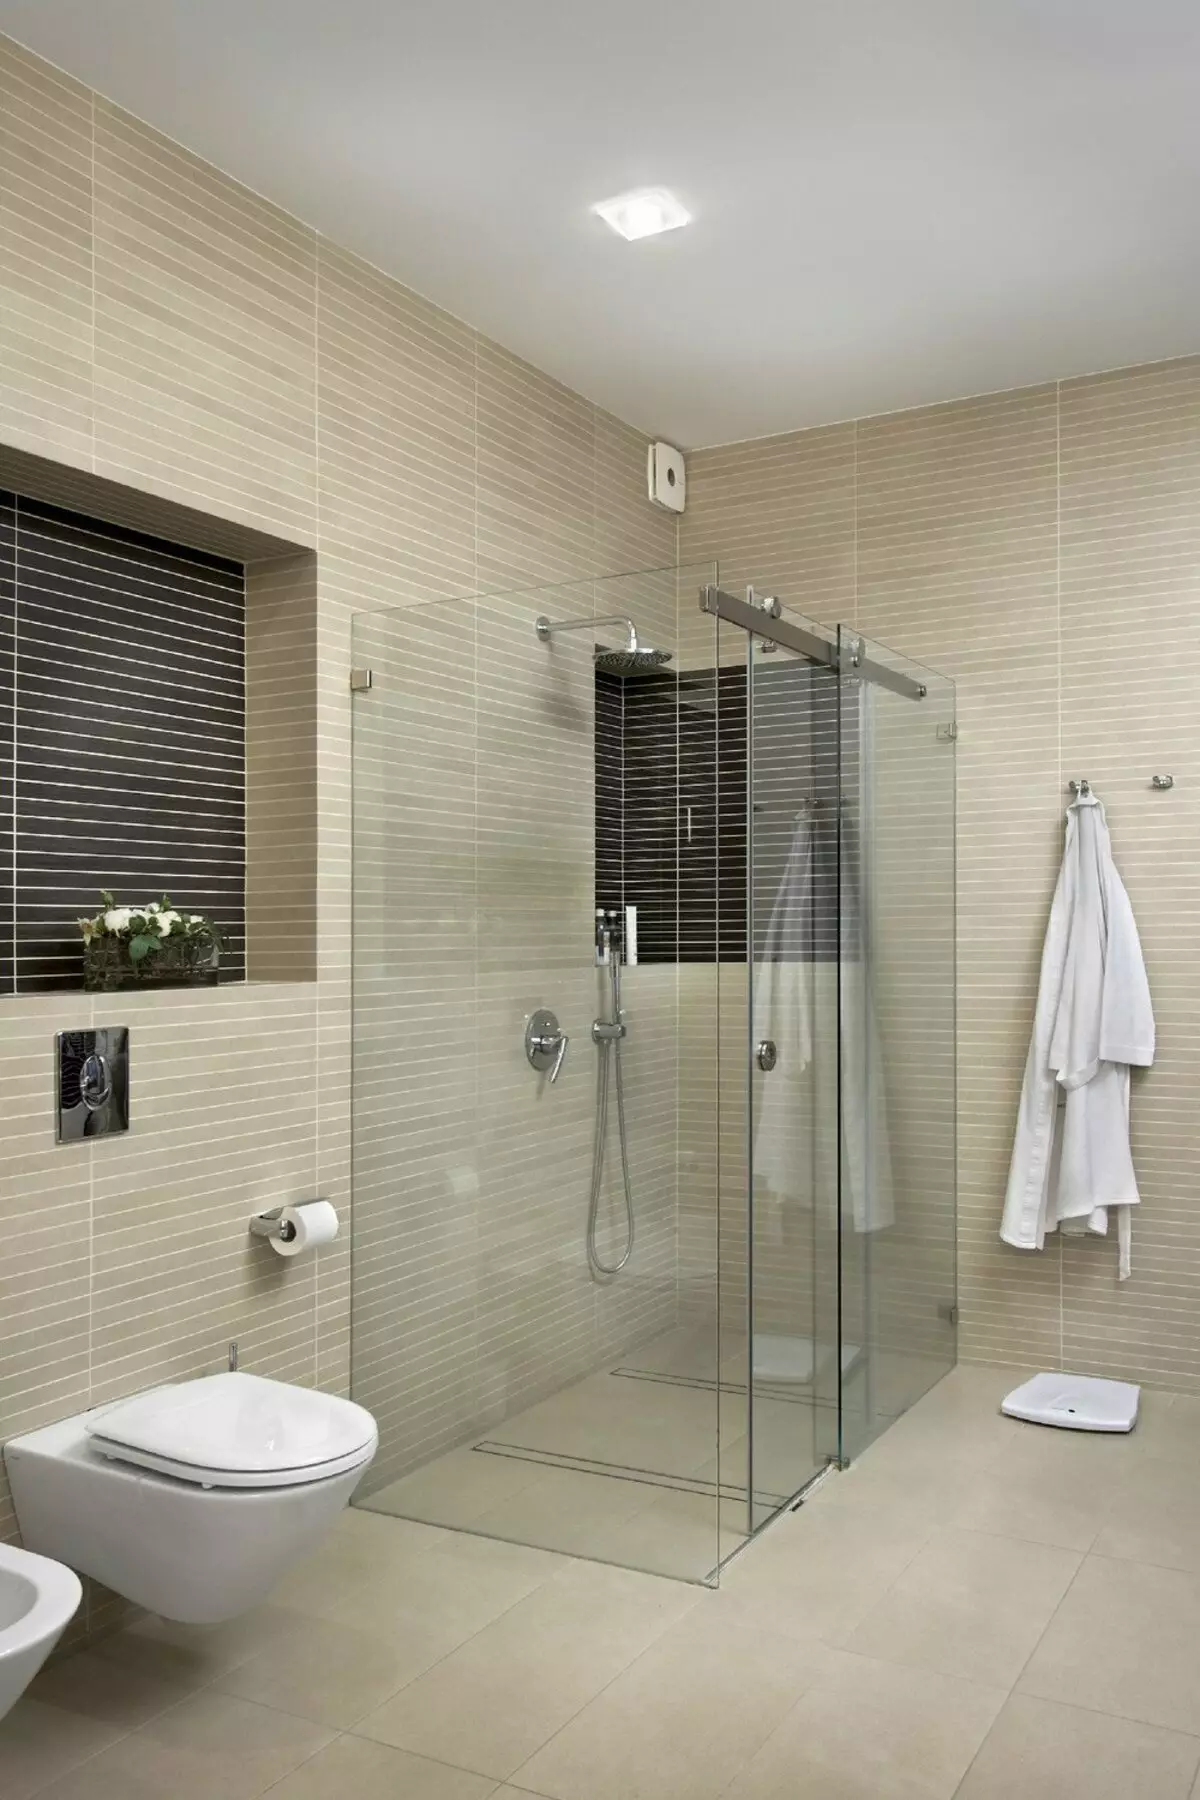 ฝักบัวอาบน้ำในห้องน้ำโดยไม่มีห้องโดยสาร (86 รูป): ตัวเลือกการออกแบบห้องน้ำพร้อมฝักบัวอาบน้ำที่ไม่มีพาเลทและห้องโดยสารกระเบื้องโครงการ 21384_20